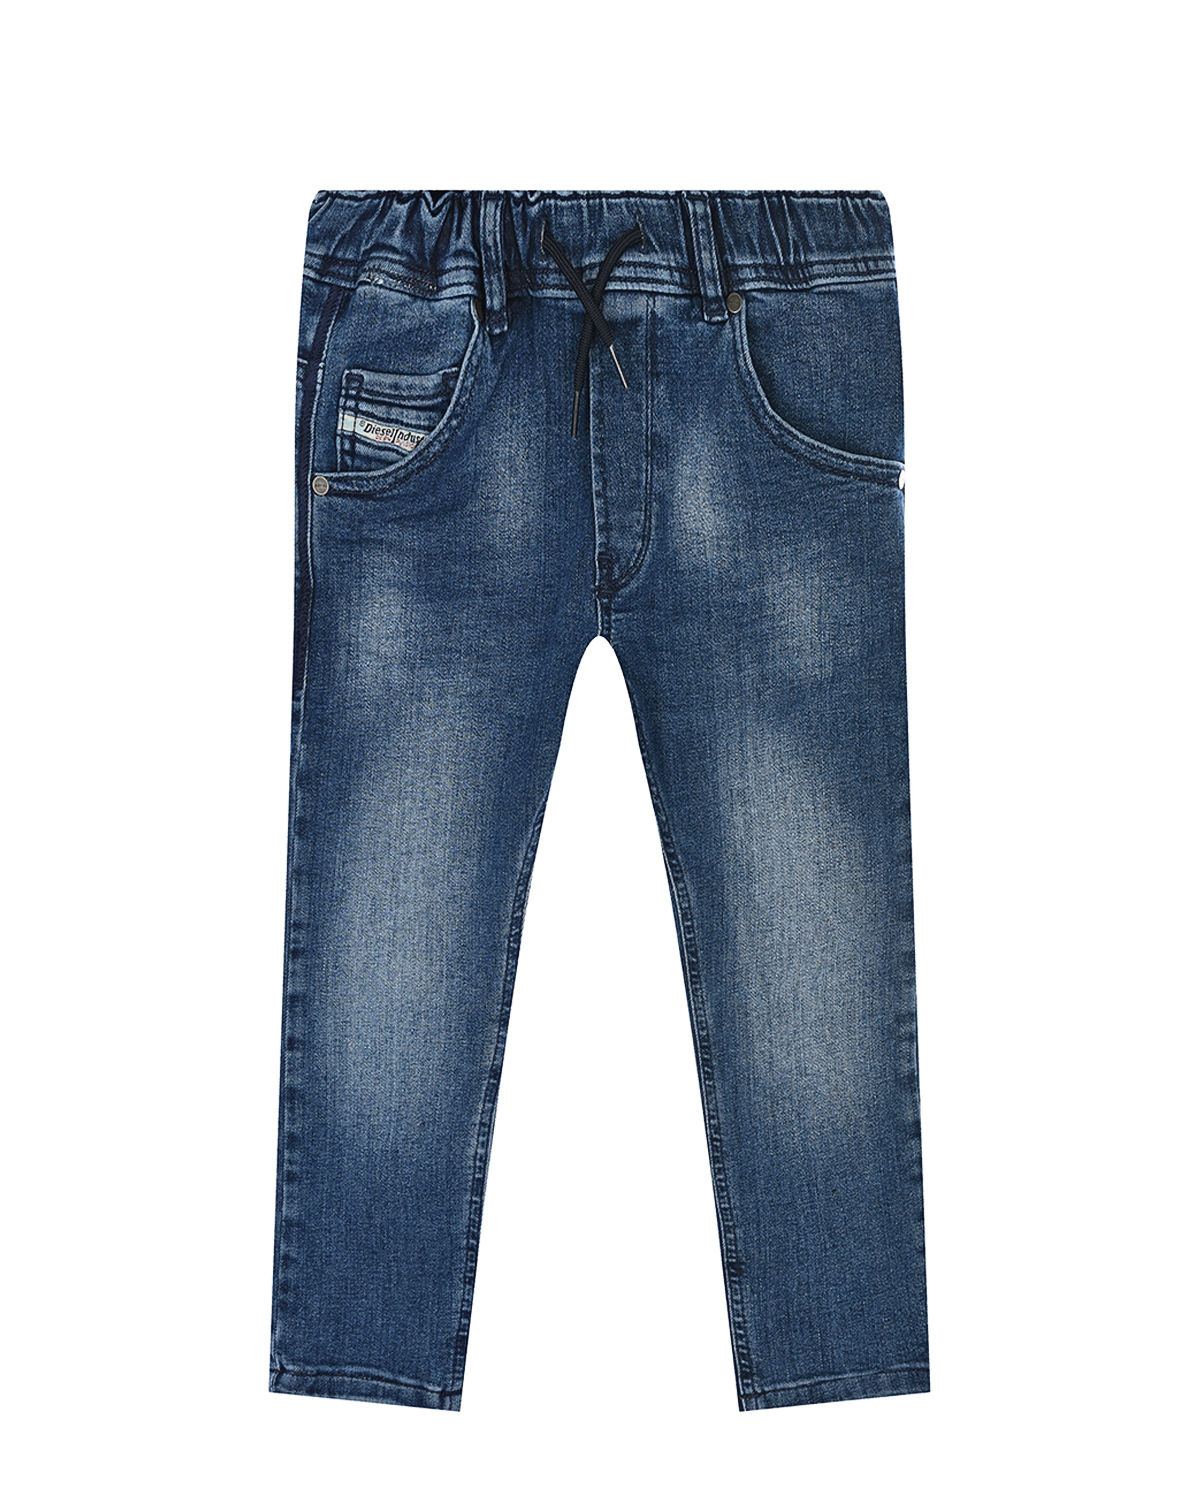 Утепленные синие джинсы на хлопковой подкладке Diesel детские, размер 104, цвет синий